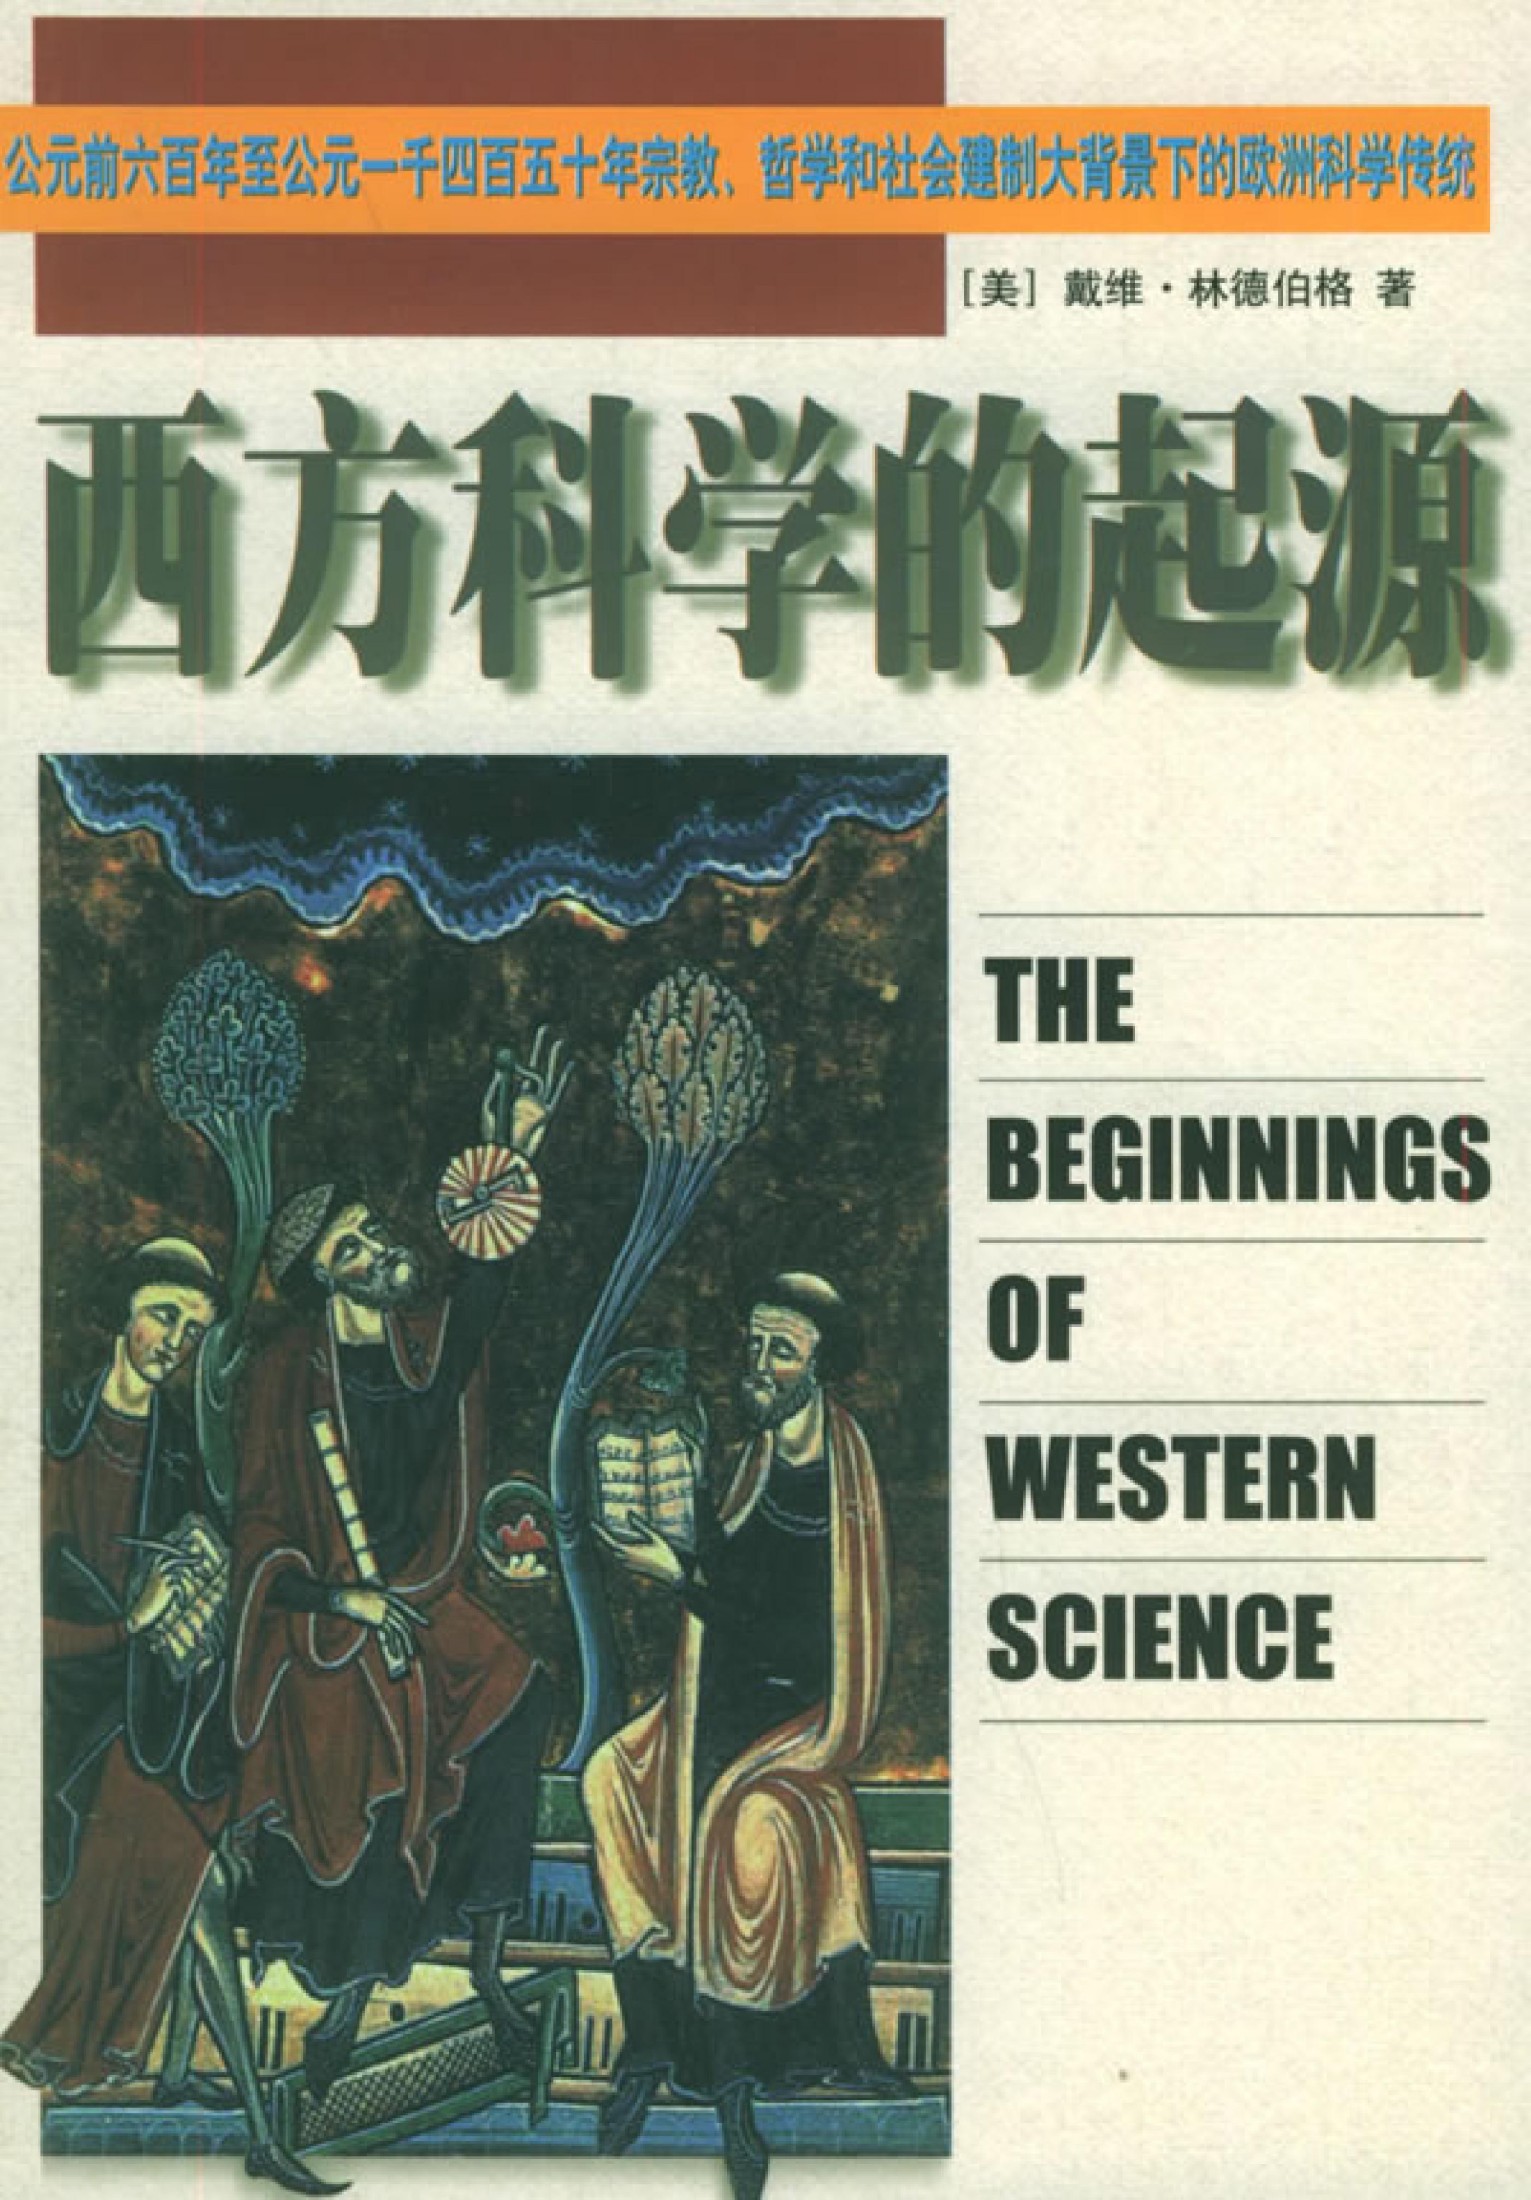 西方科学的起源：公元前六百年至公元一千四百五十年宗教、哲学和社会建制大北景下的欧洲科学传统